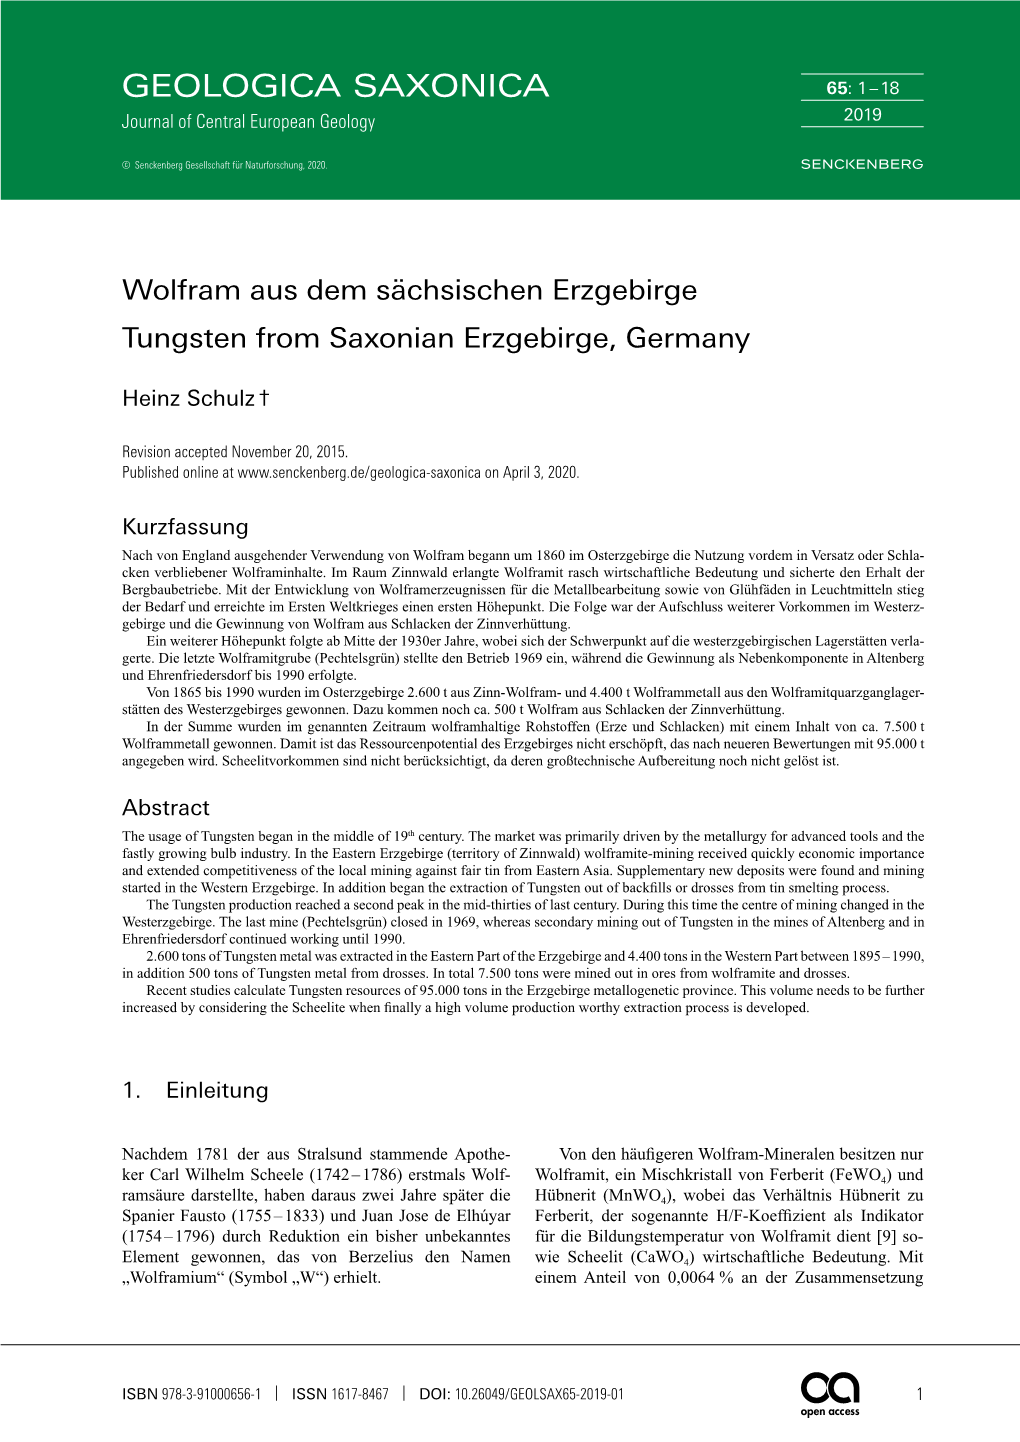 Wolfram Aus Dem Sächsischen Erzgebirge / Tungsten From